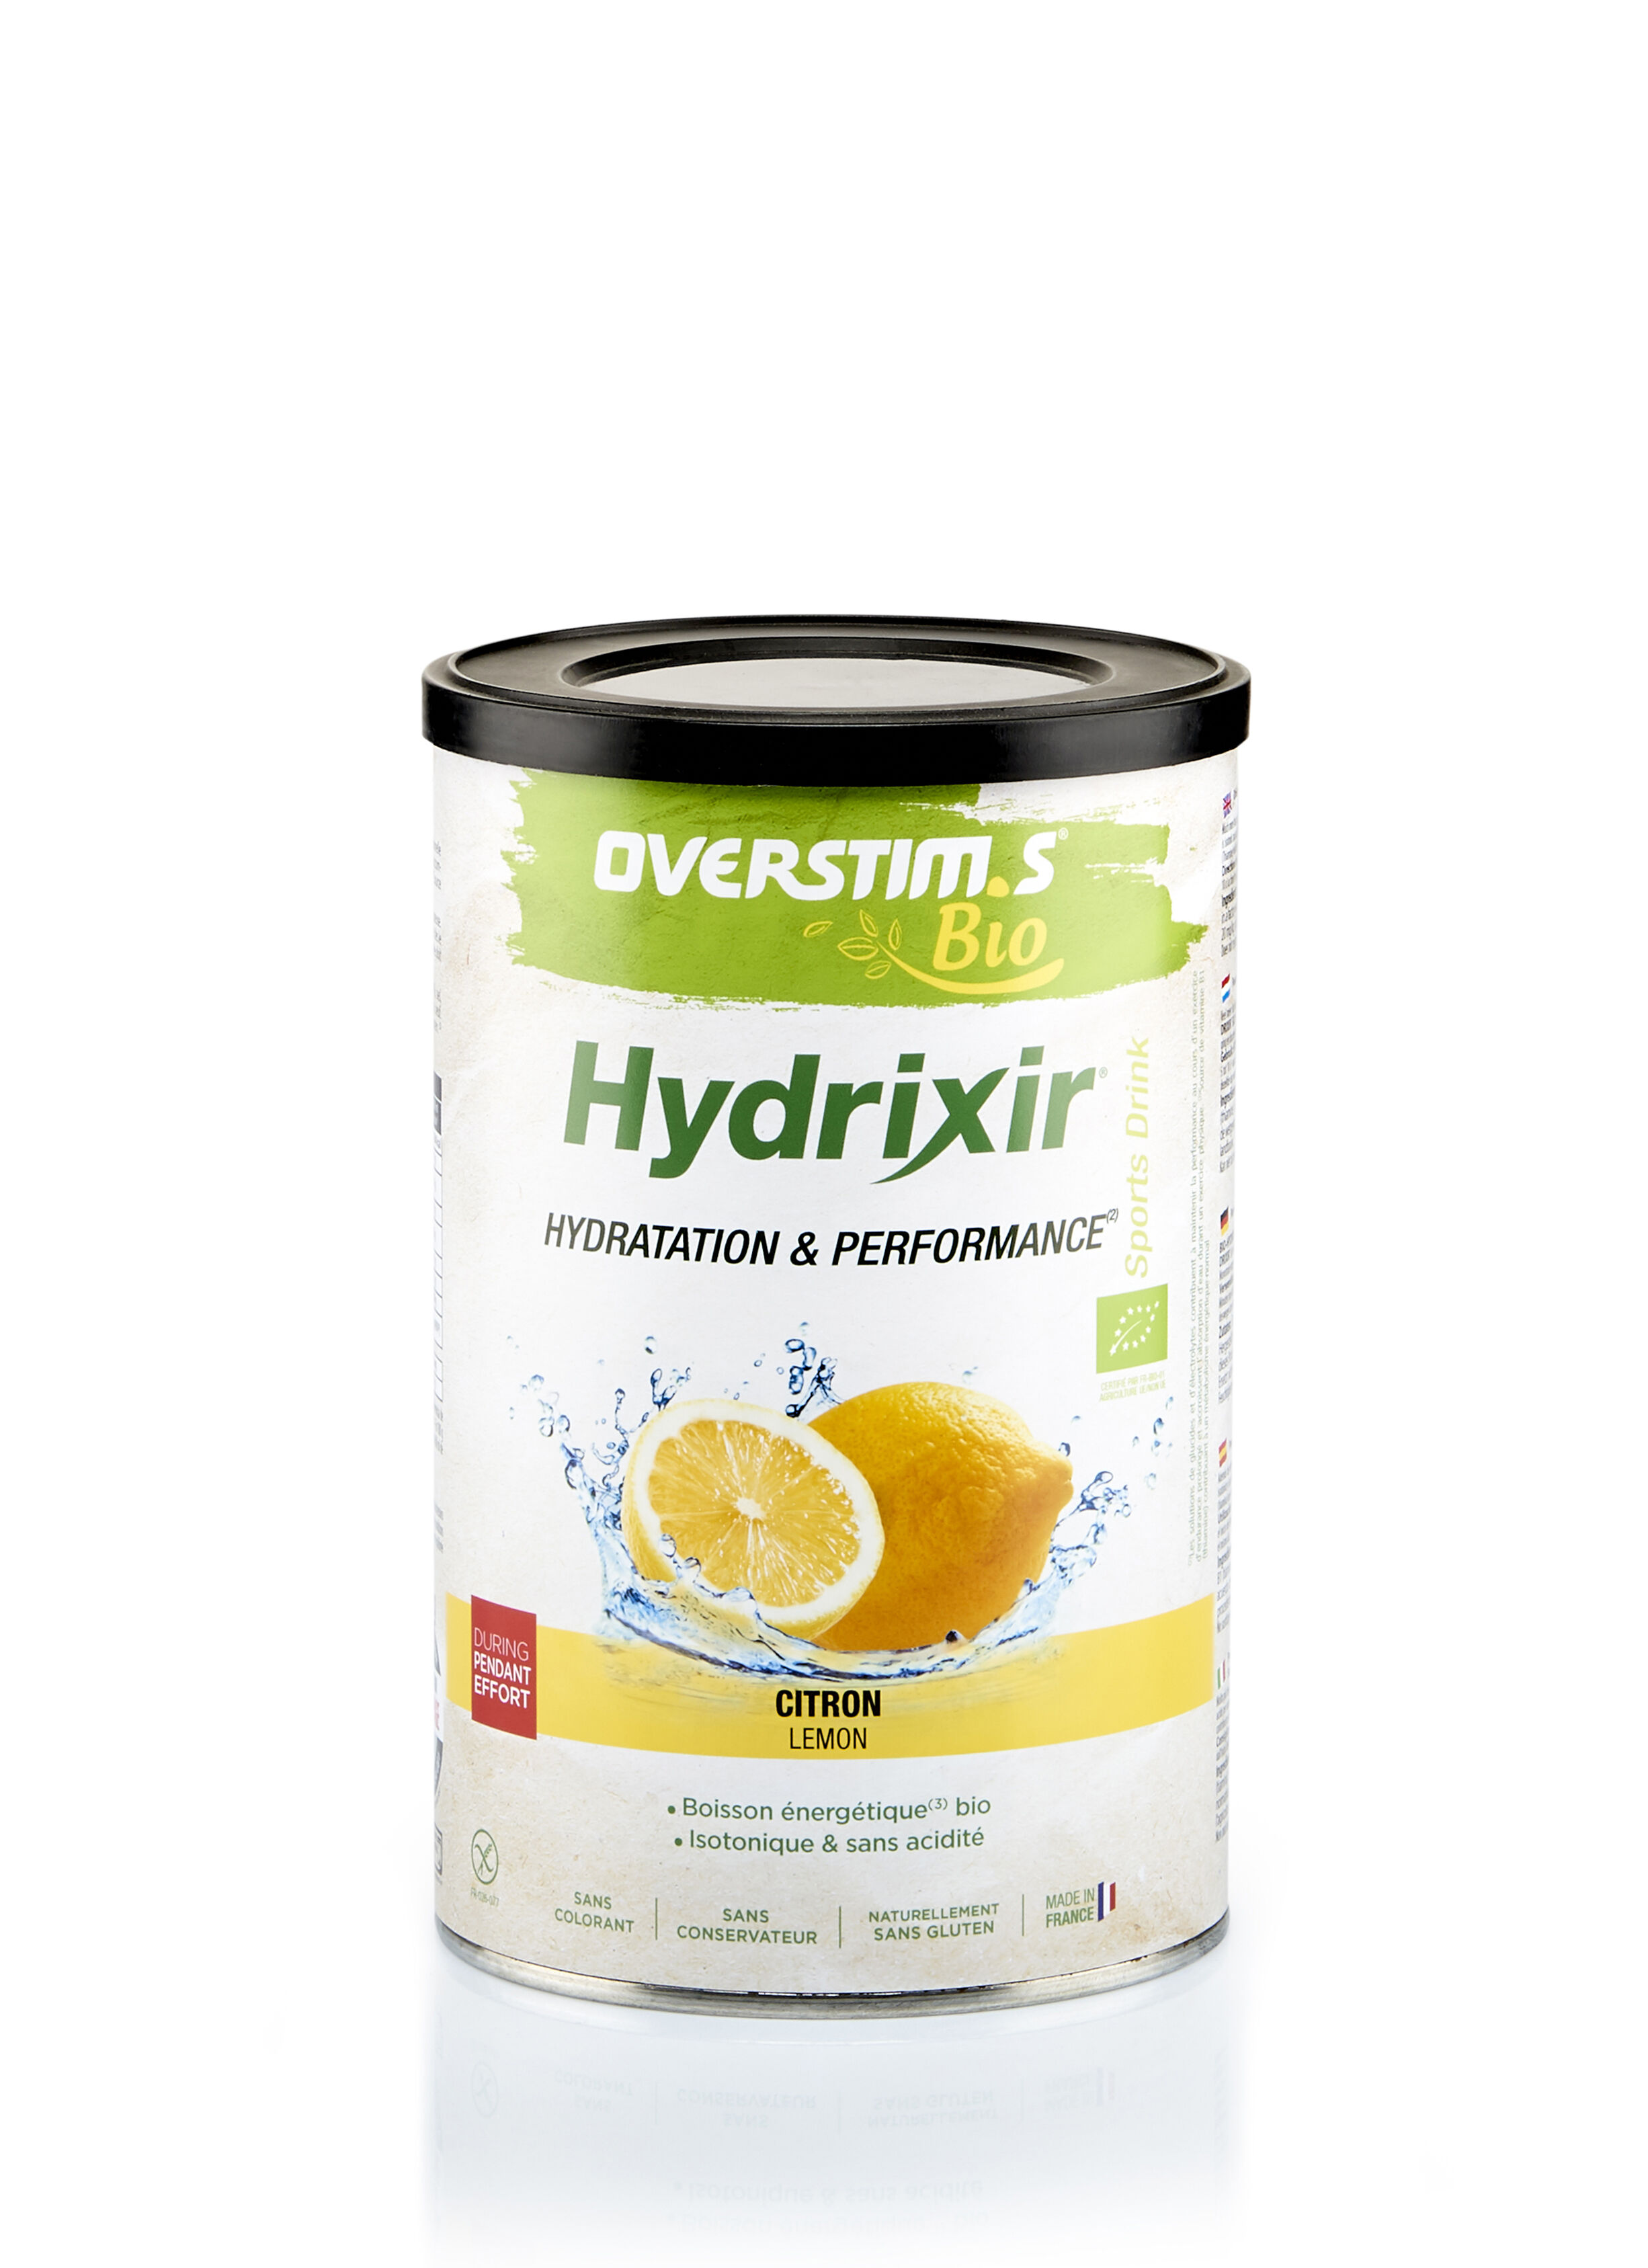 Overstim.s Hydrixir Antioxydant Bio - Energetický nápoj | Hardloop